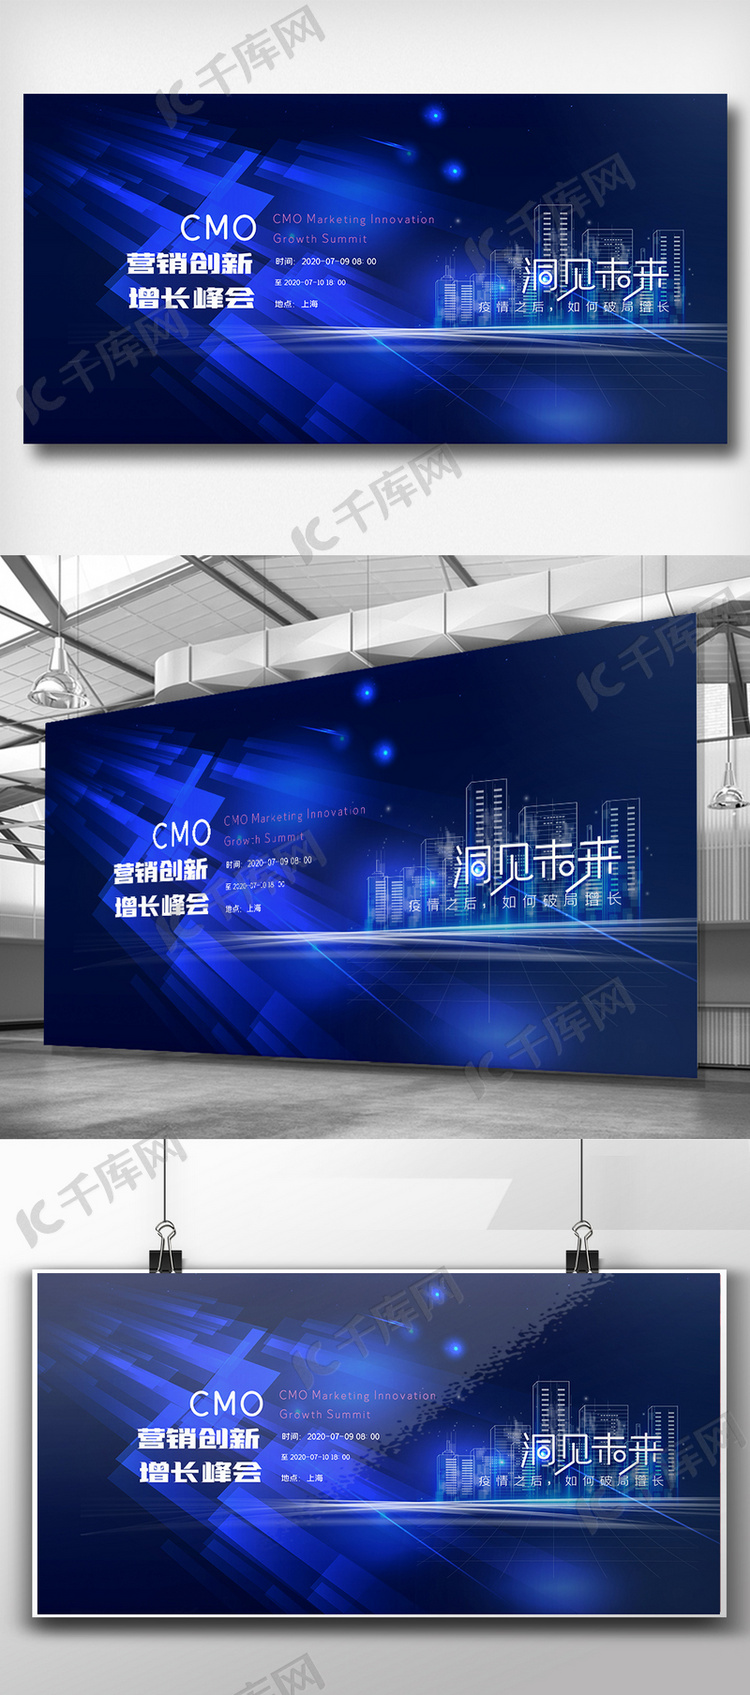 蓝色酷炫CMO营销创新增长峰会展板